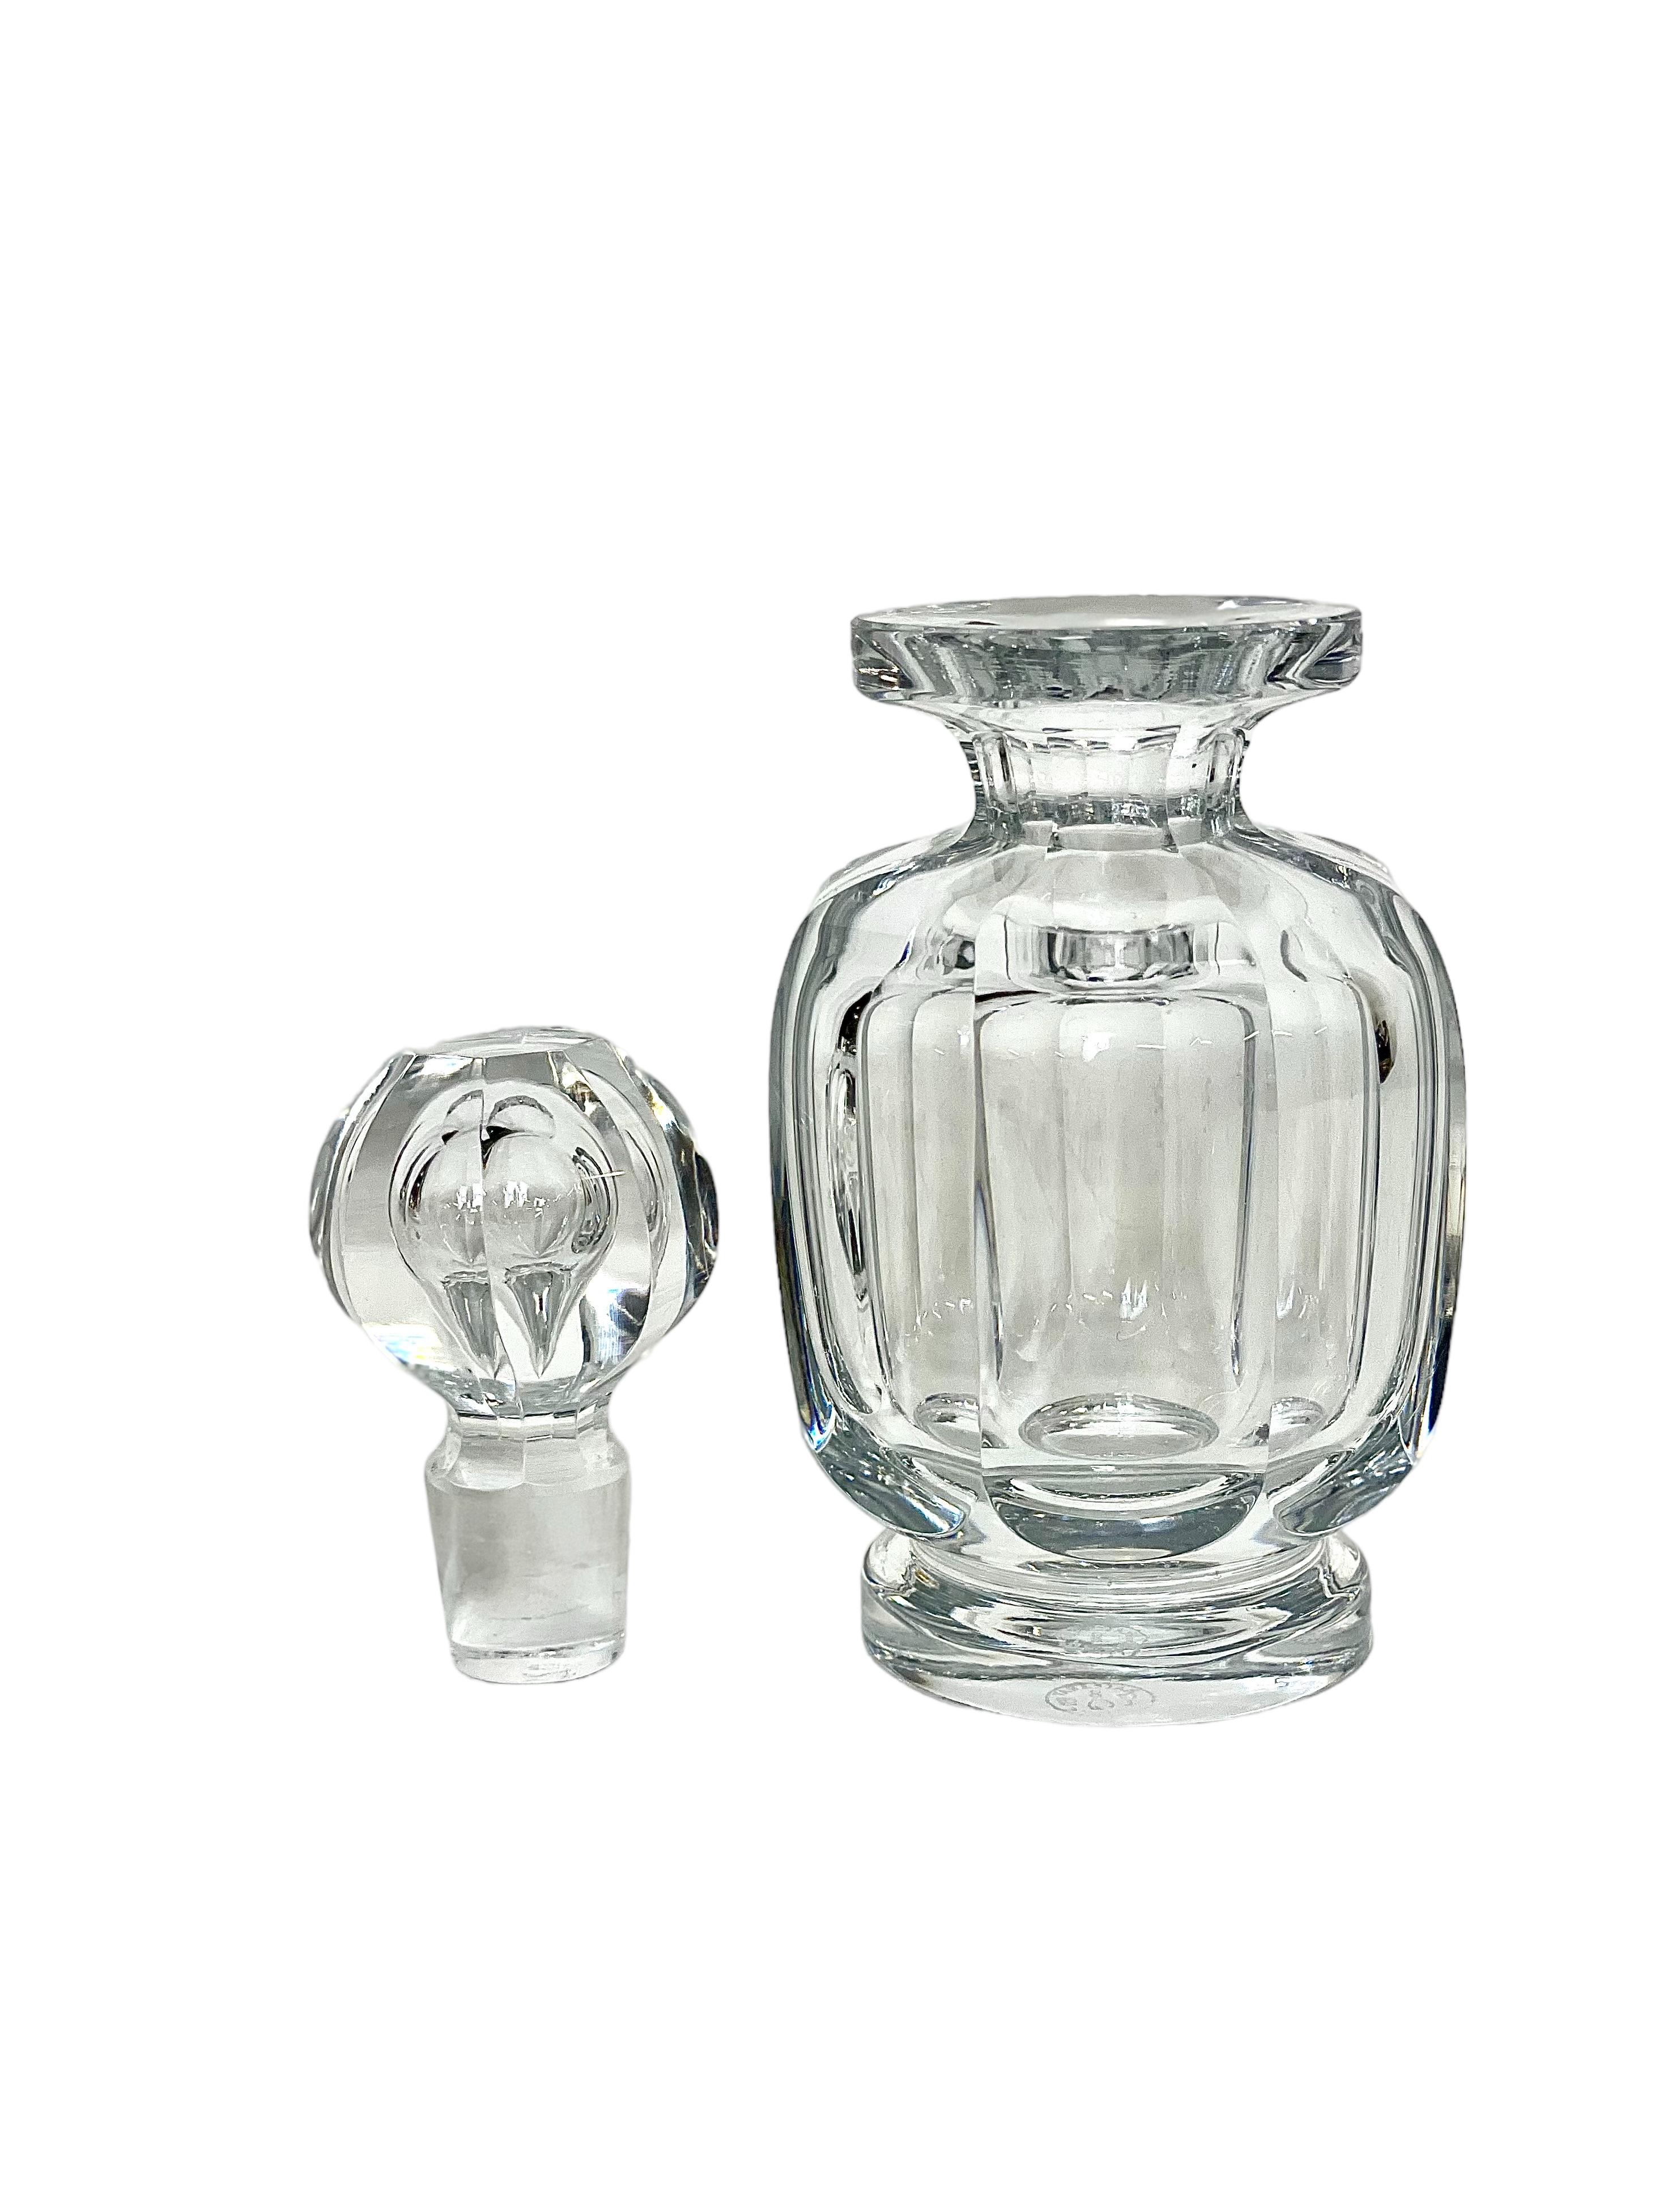 Un magnifique flacon en cristal Baccarat Art déco des années 1940, avec un bouchon octogonal à multiples facettes, conçu à l'origine pour orner une élégante table de toilette du milieu du siècle dernier. D'une hauteur d'un peu plus de 15 cm, cette